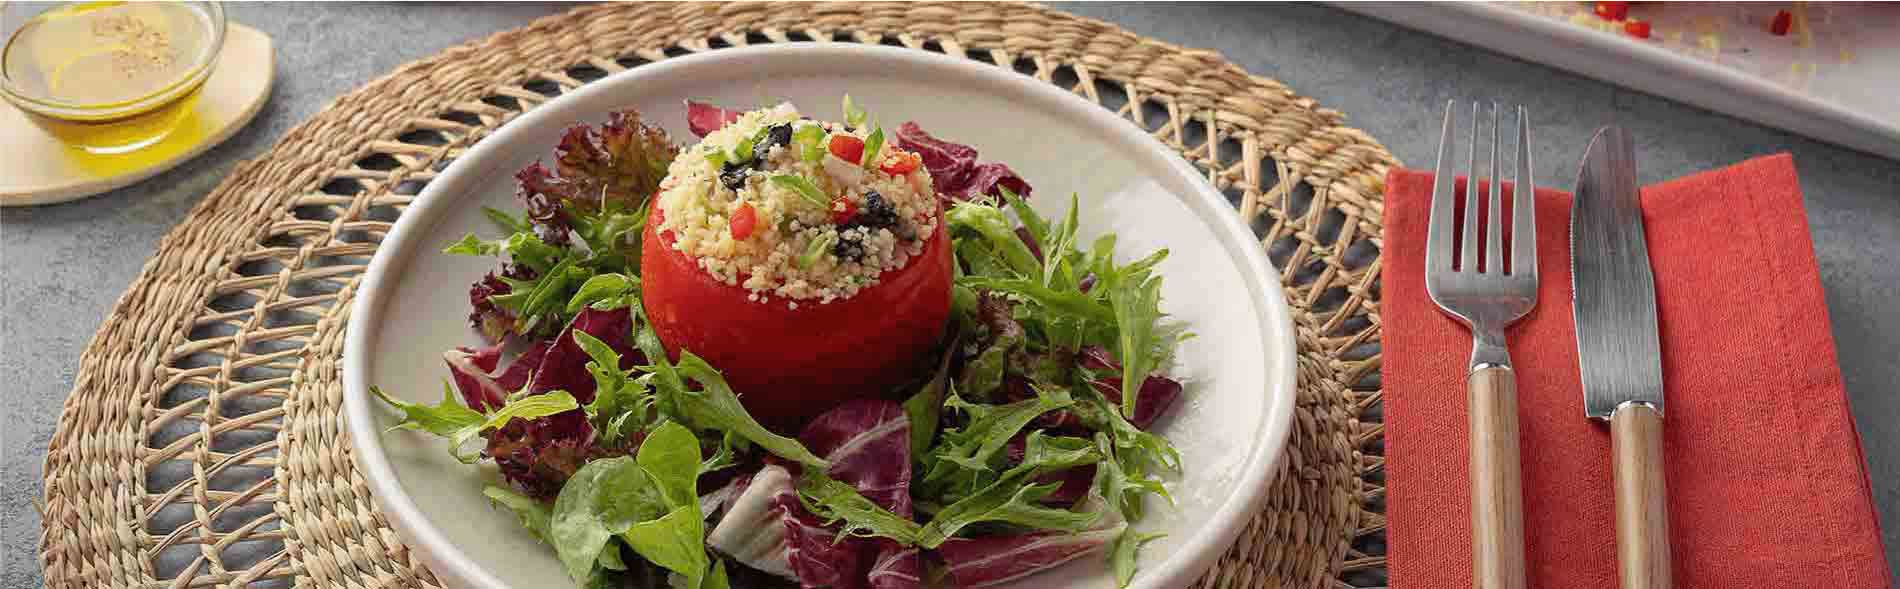 plato y fuente con tomates rellenos de cuscus carozzi